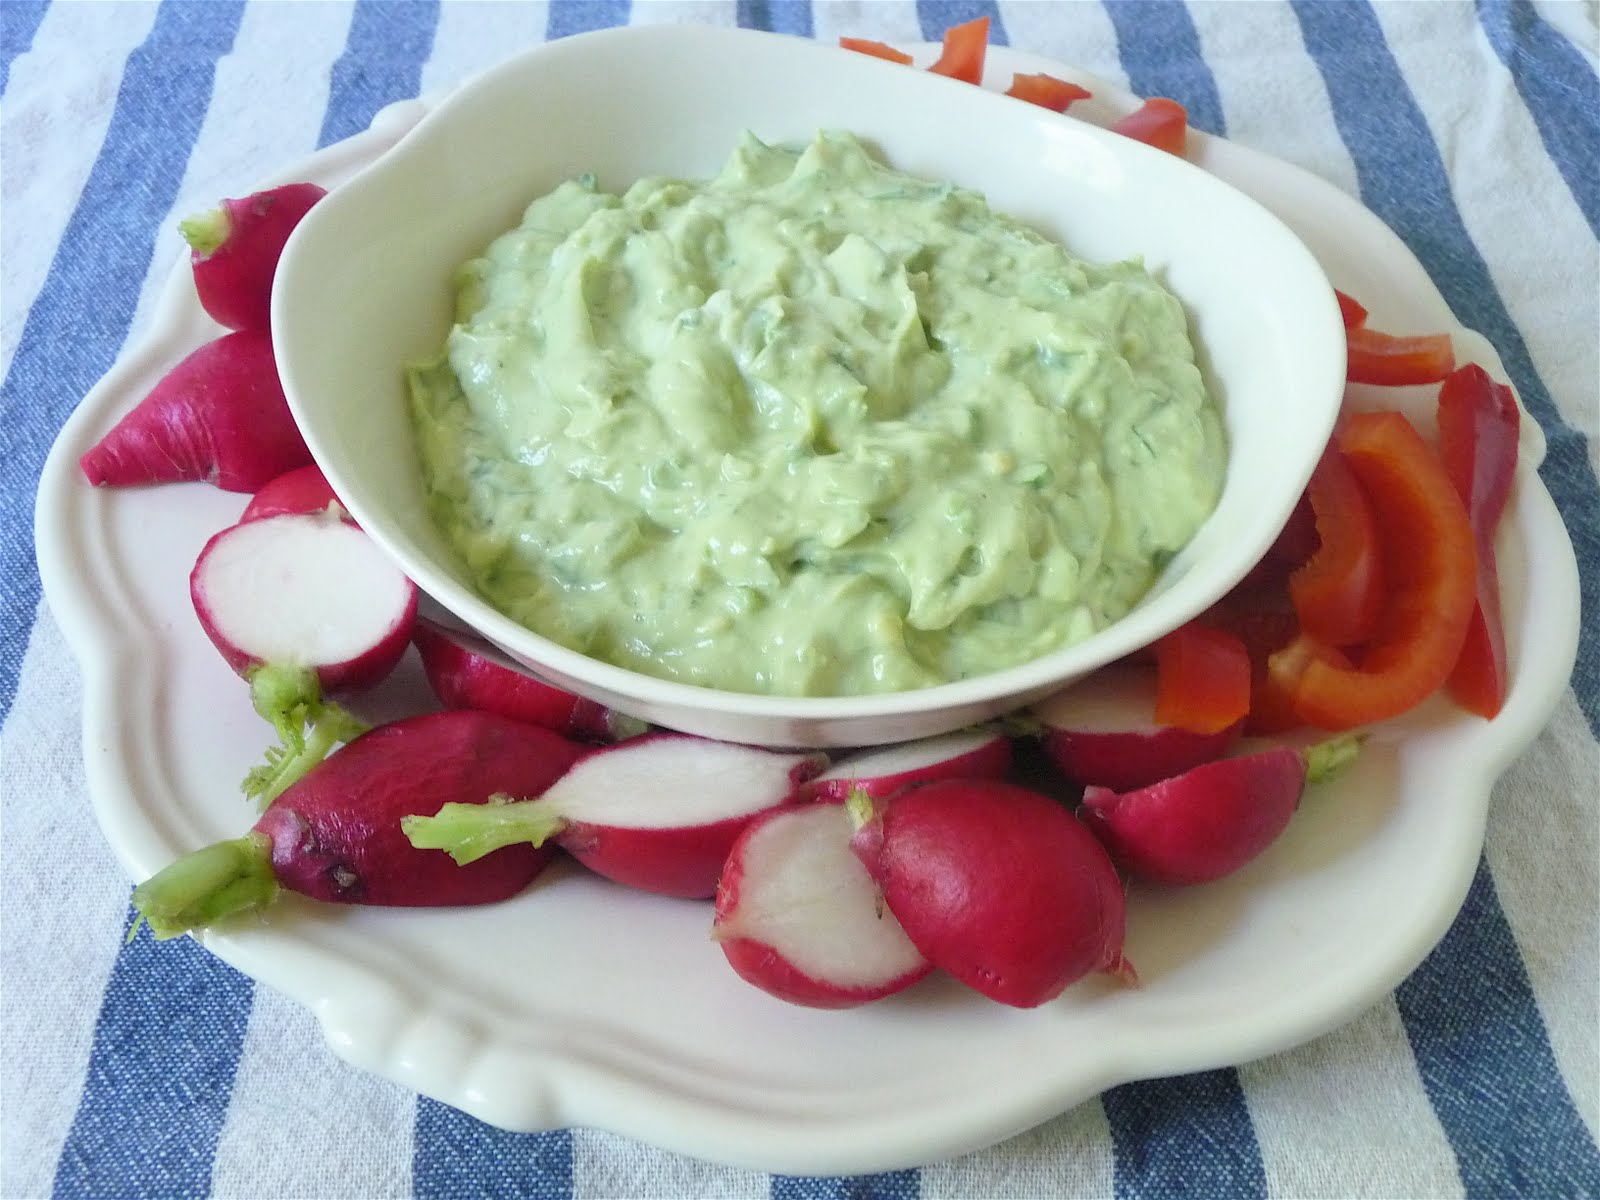 dinner party: avocado-yogurt dip